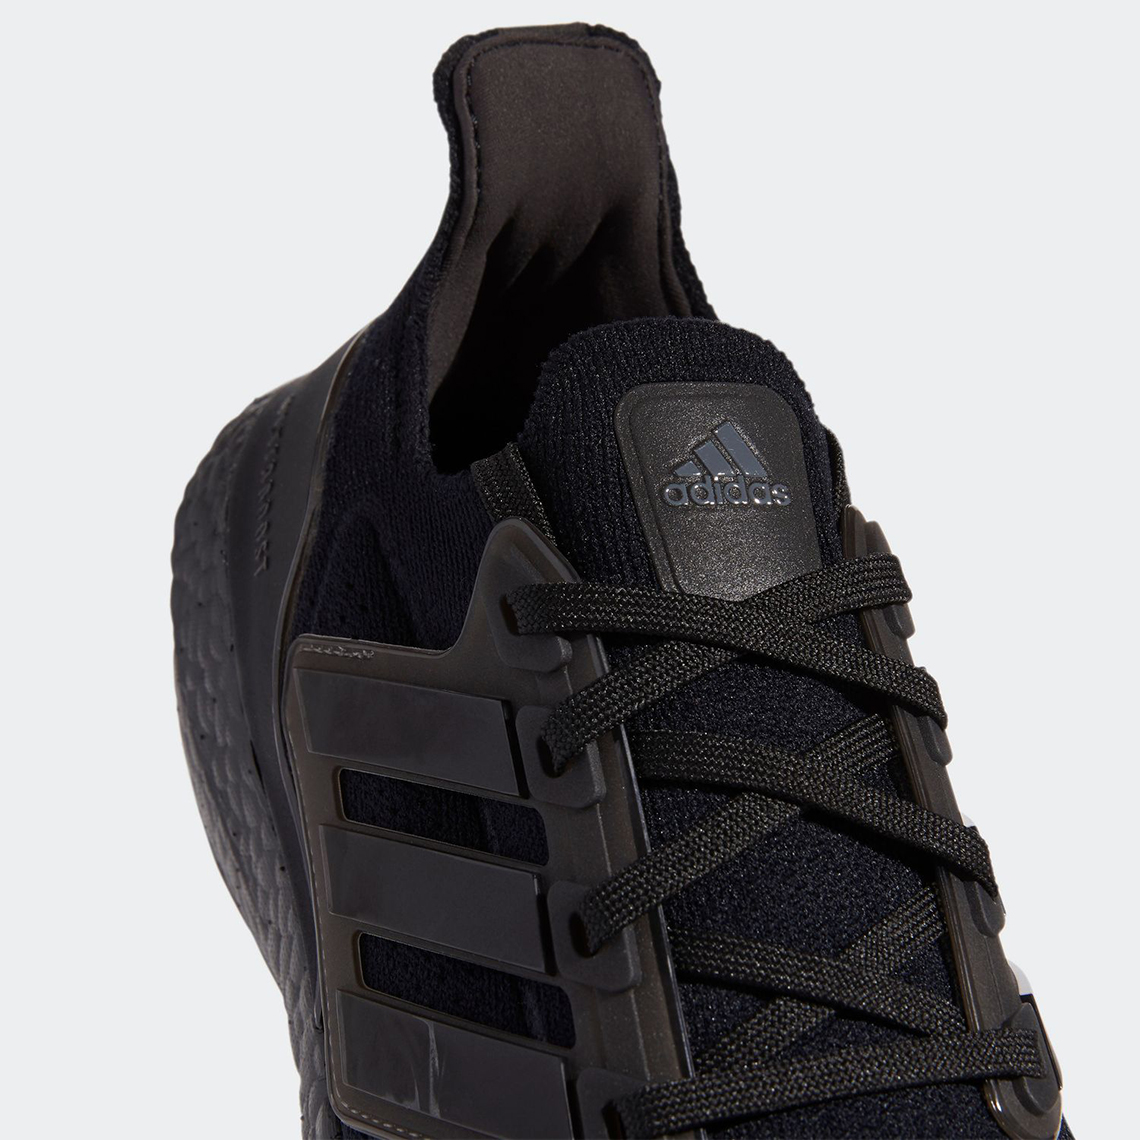 Adidas Ultraboost 21 Triple Black Fy0306 Fz2762 Release Date Sneakernews Com